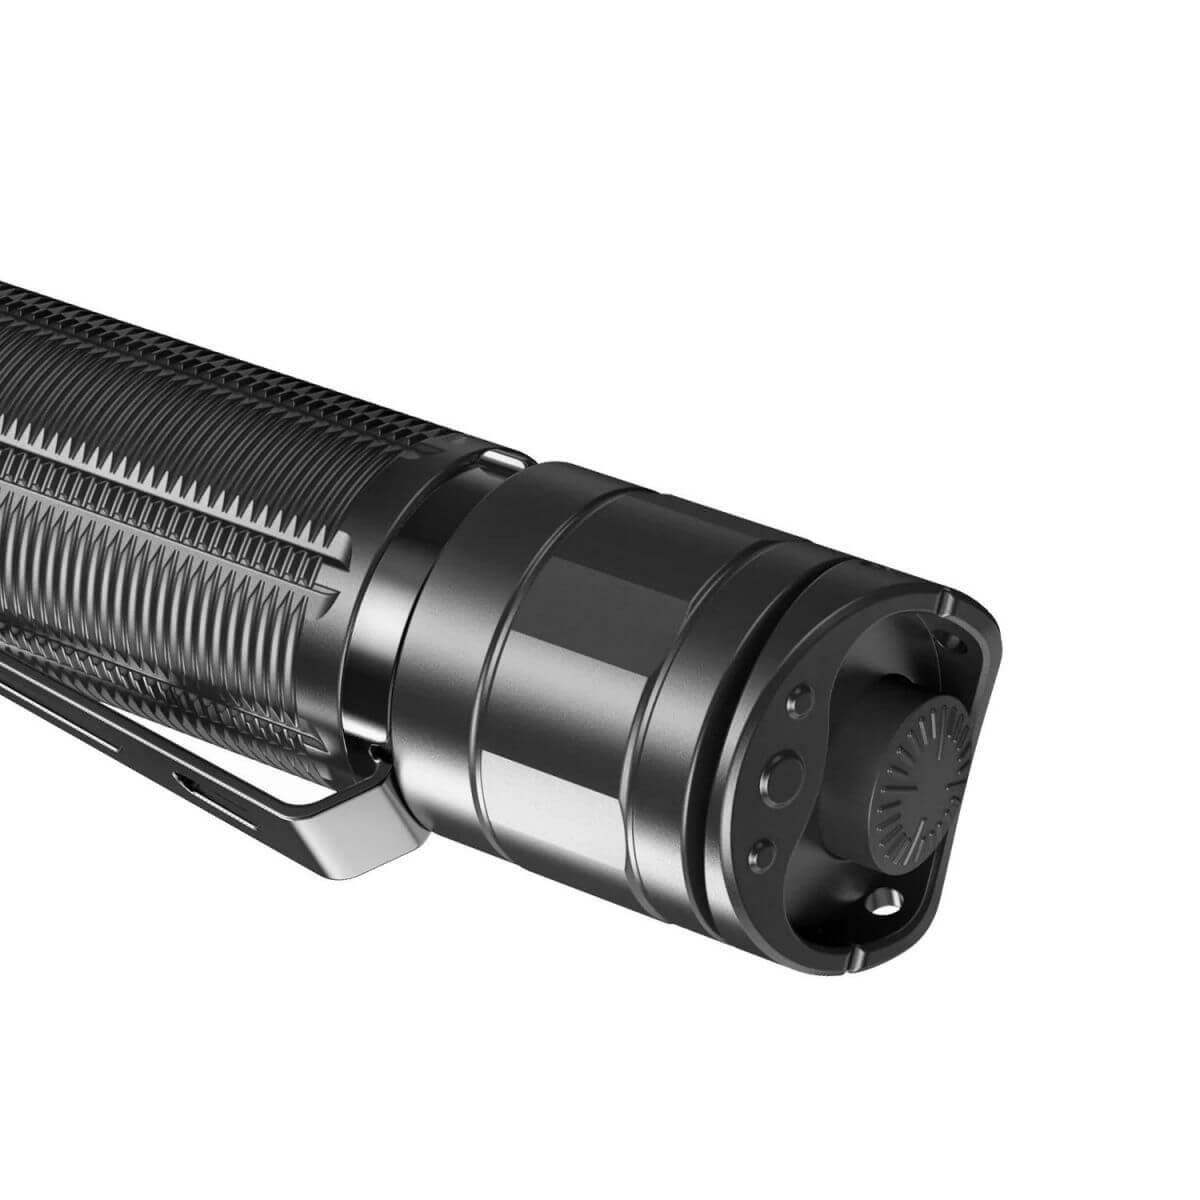 KLARUS XT21C Rechargeable Tactical Flashlight